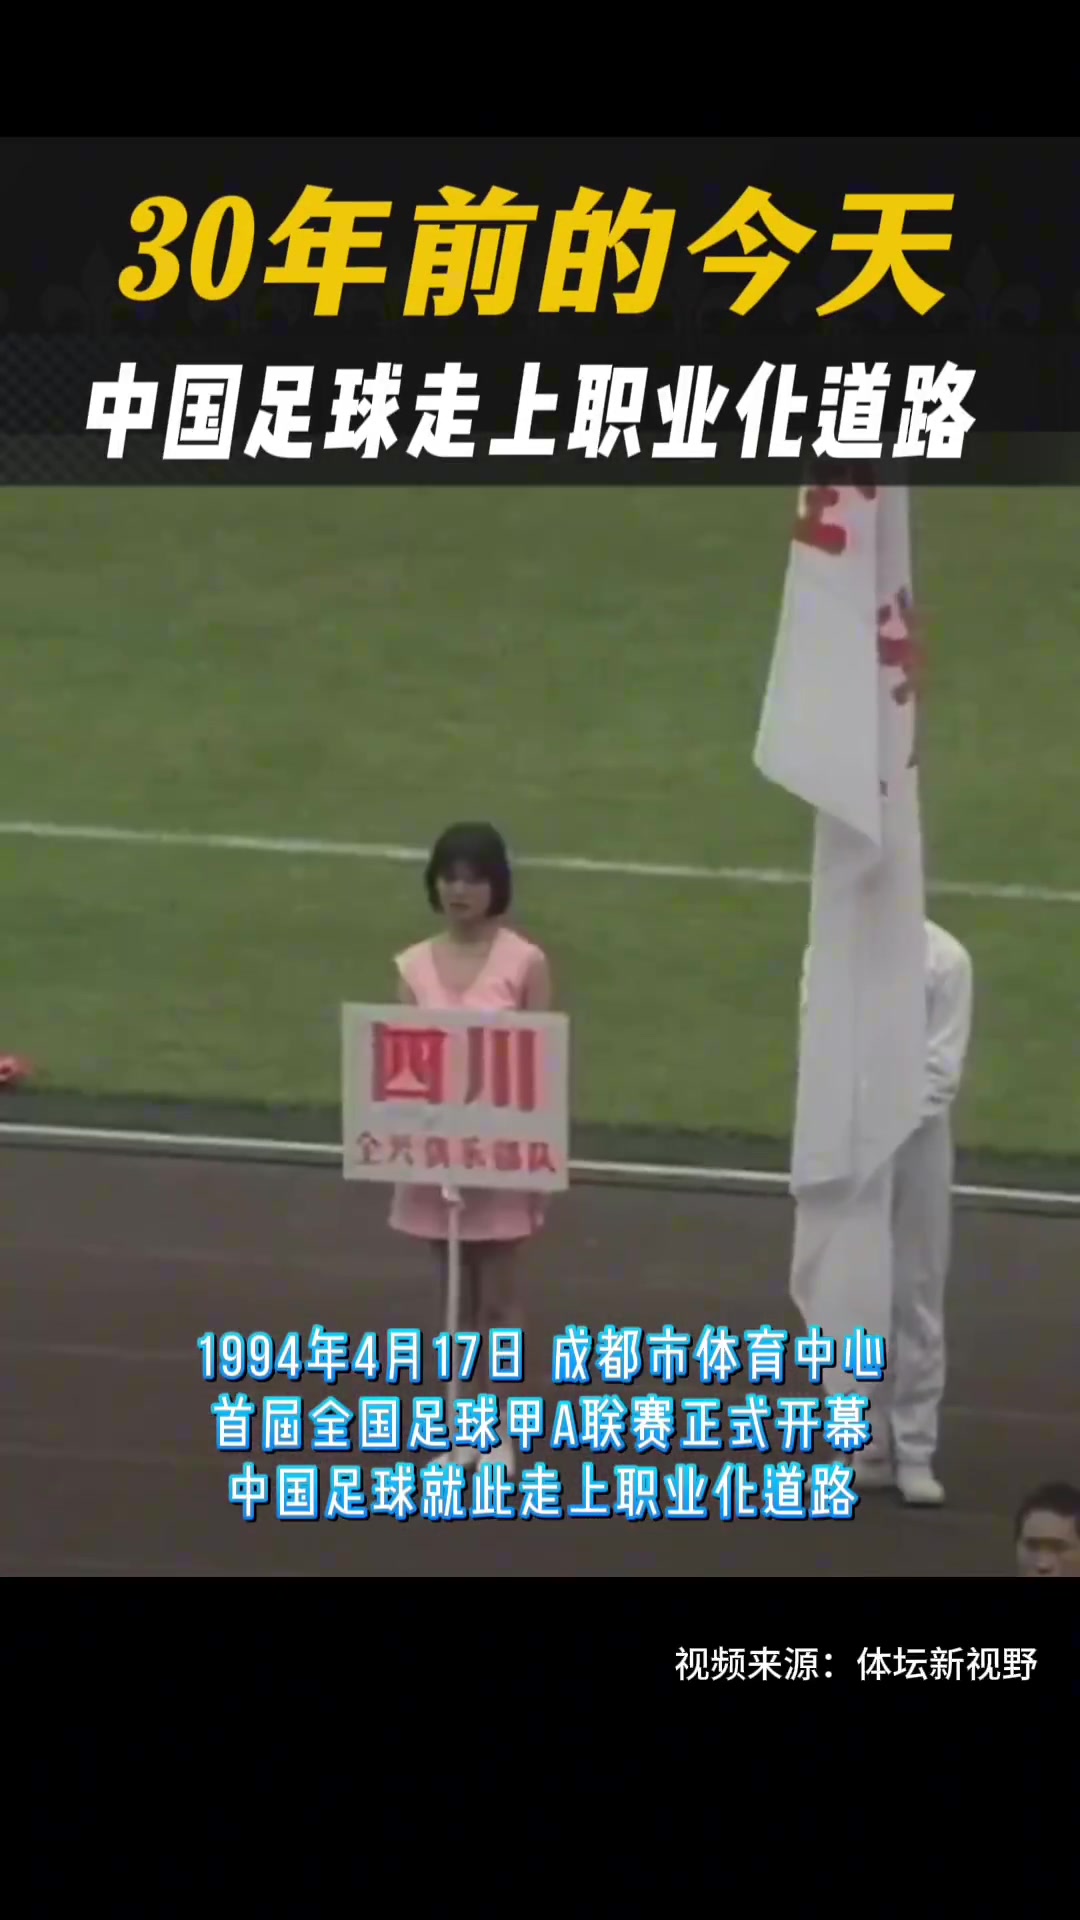 视频回顾30年前今日甲A联赛开幕盛况，中国足球走上职业化道路